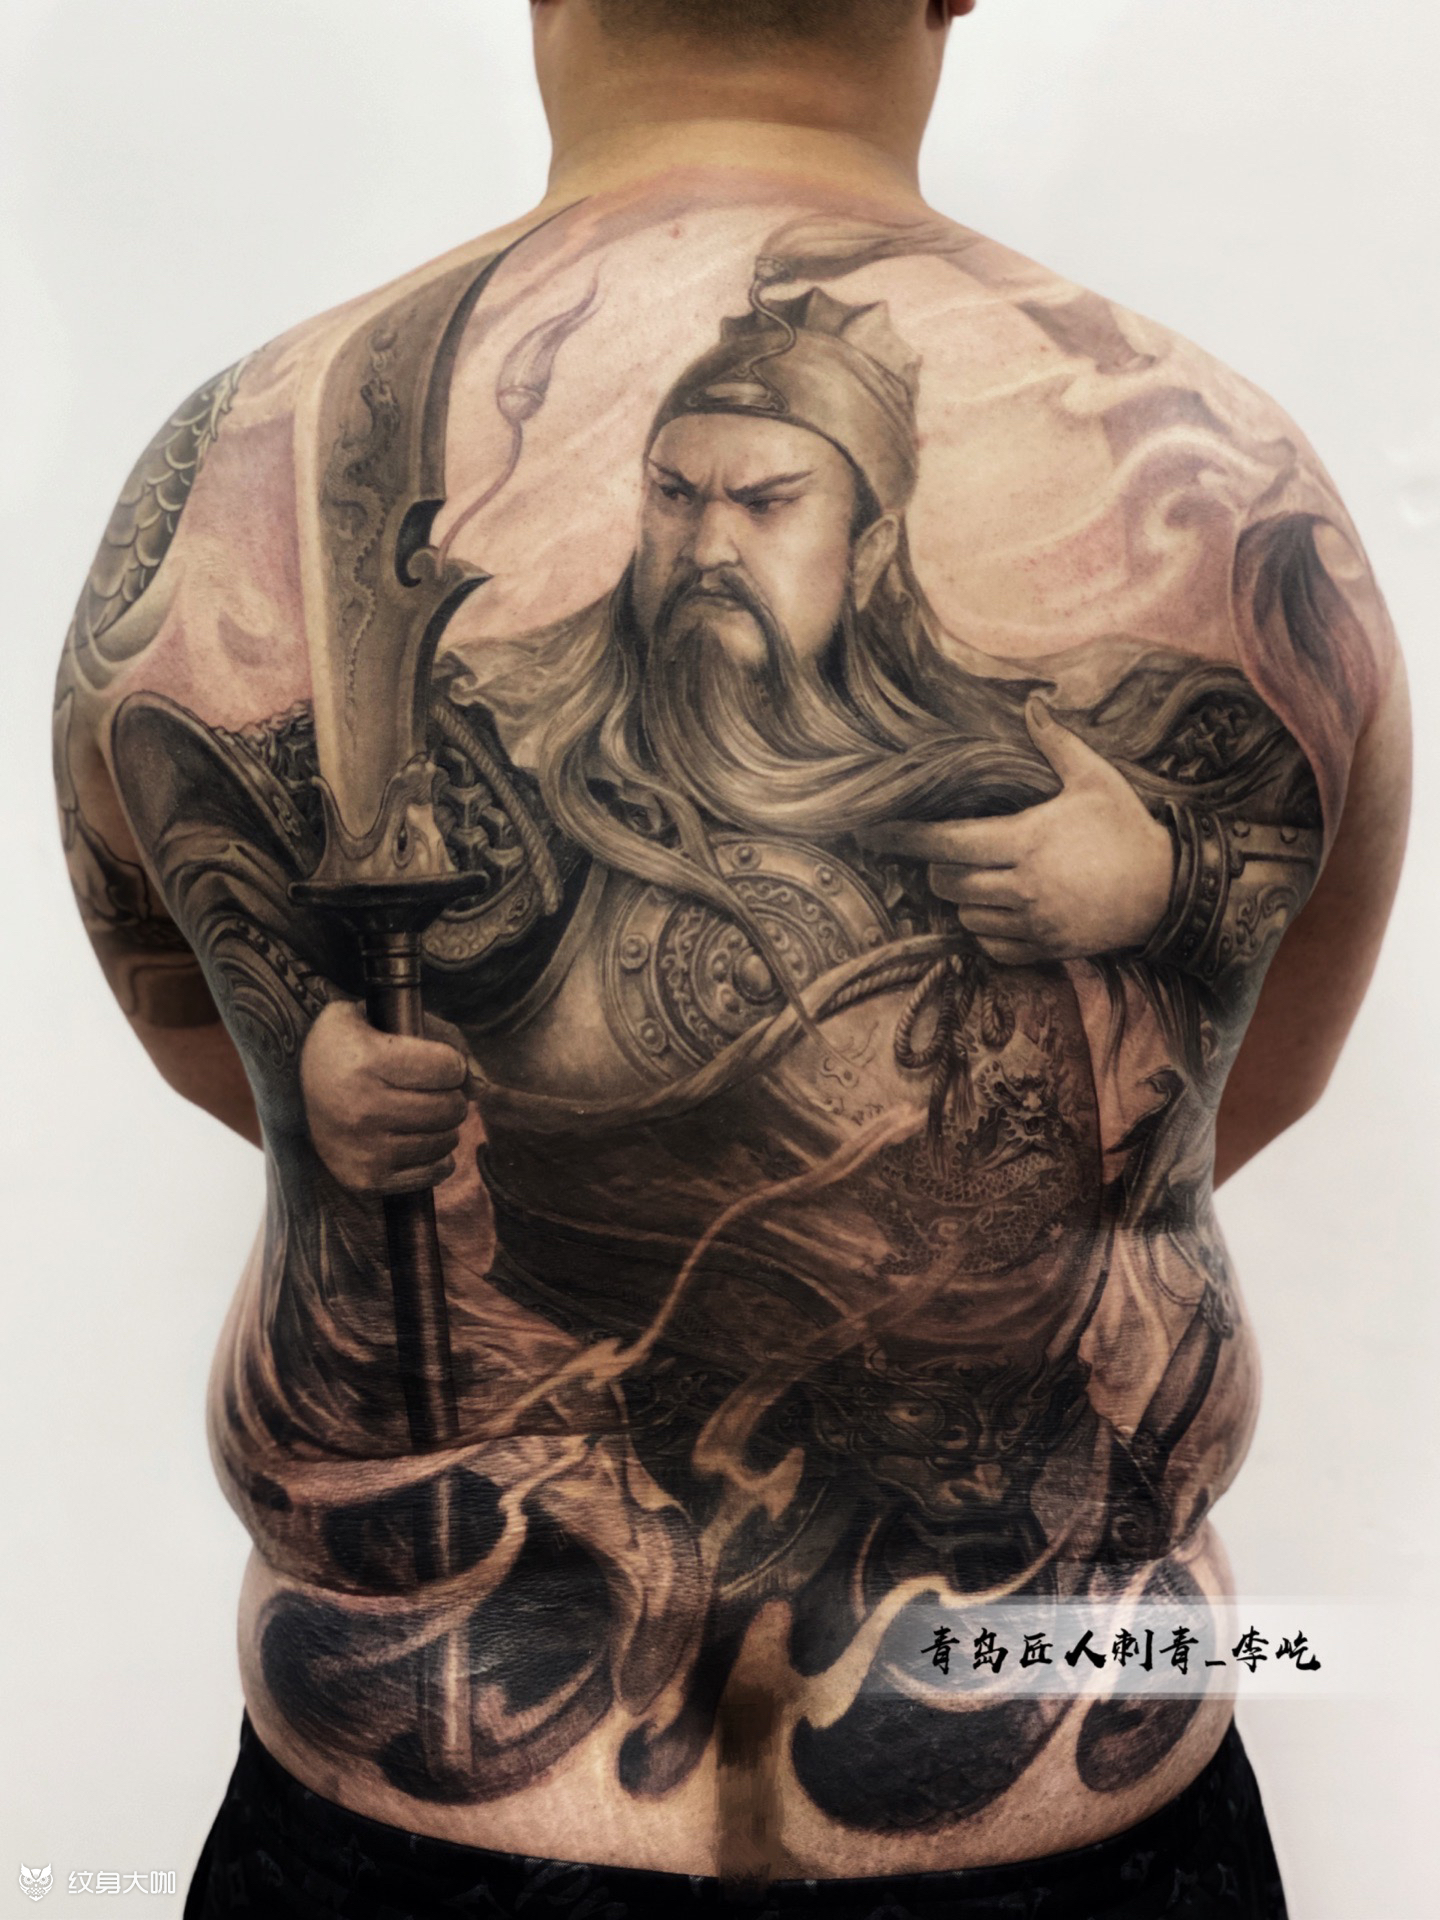 湖北老兵武汉纹身培训学校|专业纹身学校|打造中国最好的纹身学校:是您学习纹身技术,纹绣培训,人体穿刺等专业技能的知名学校，学纹身包教包会。